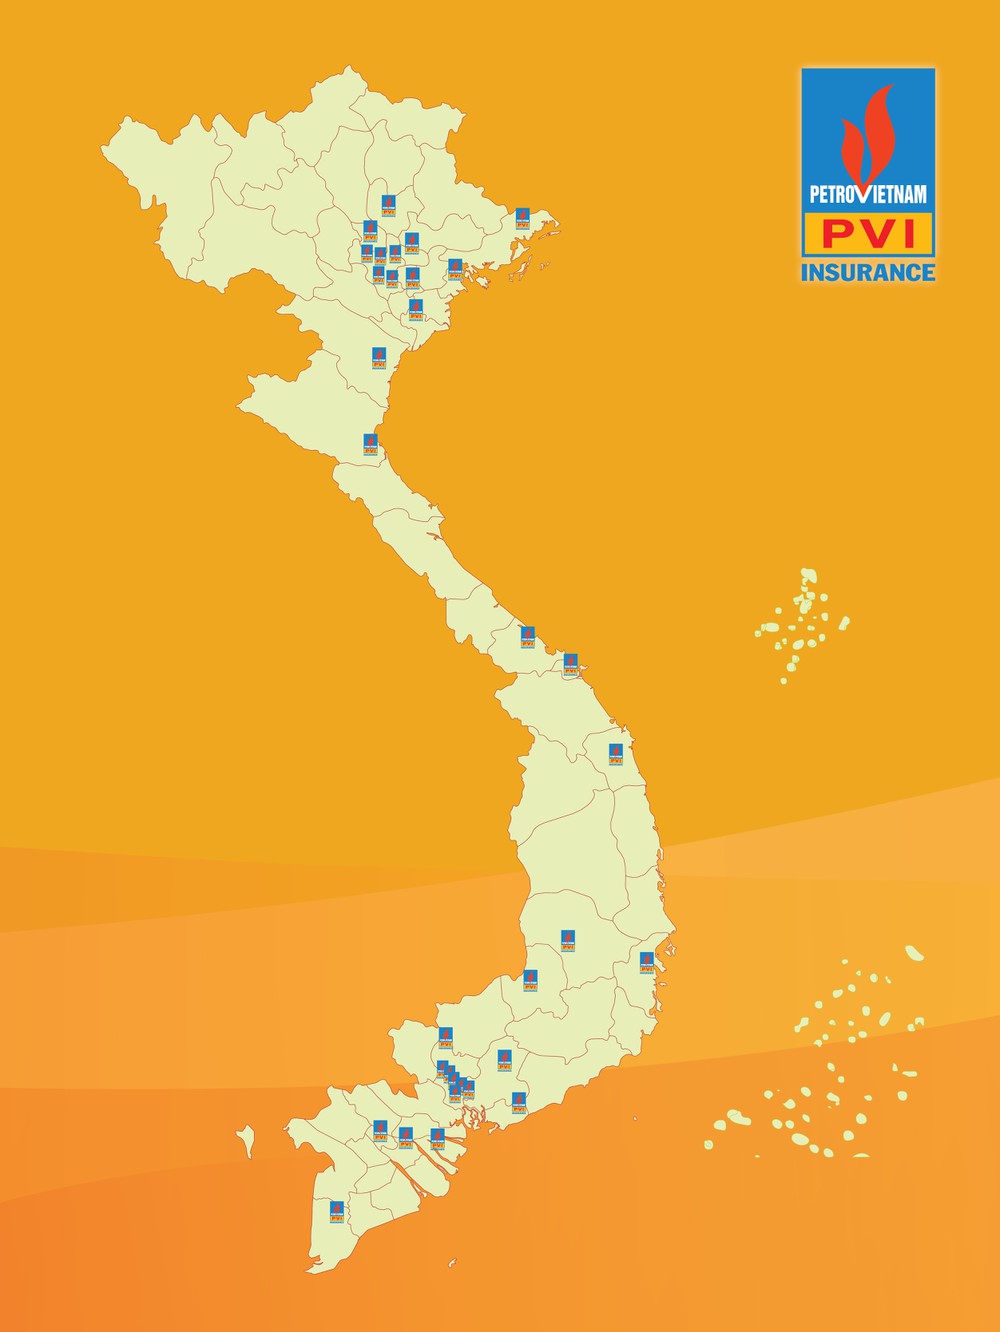 Bảo hiểm PVI được phân phối và bán trên khắp Việt Nam